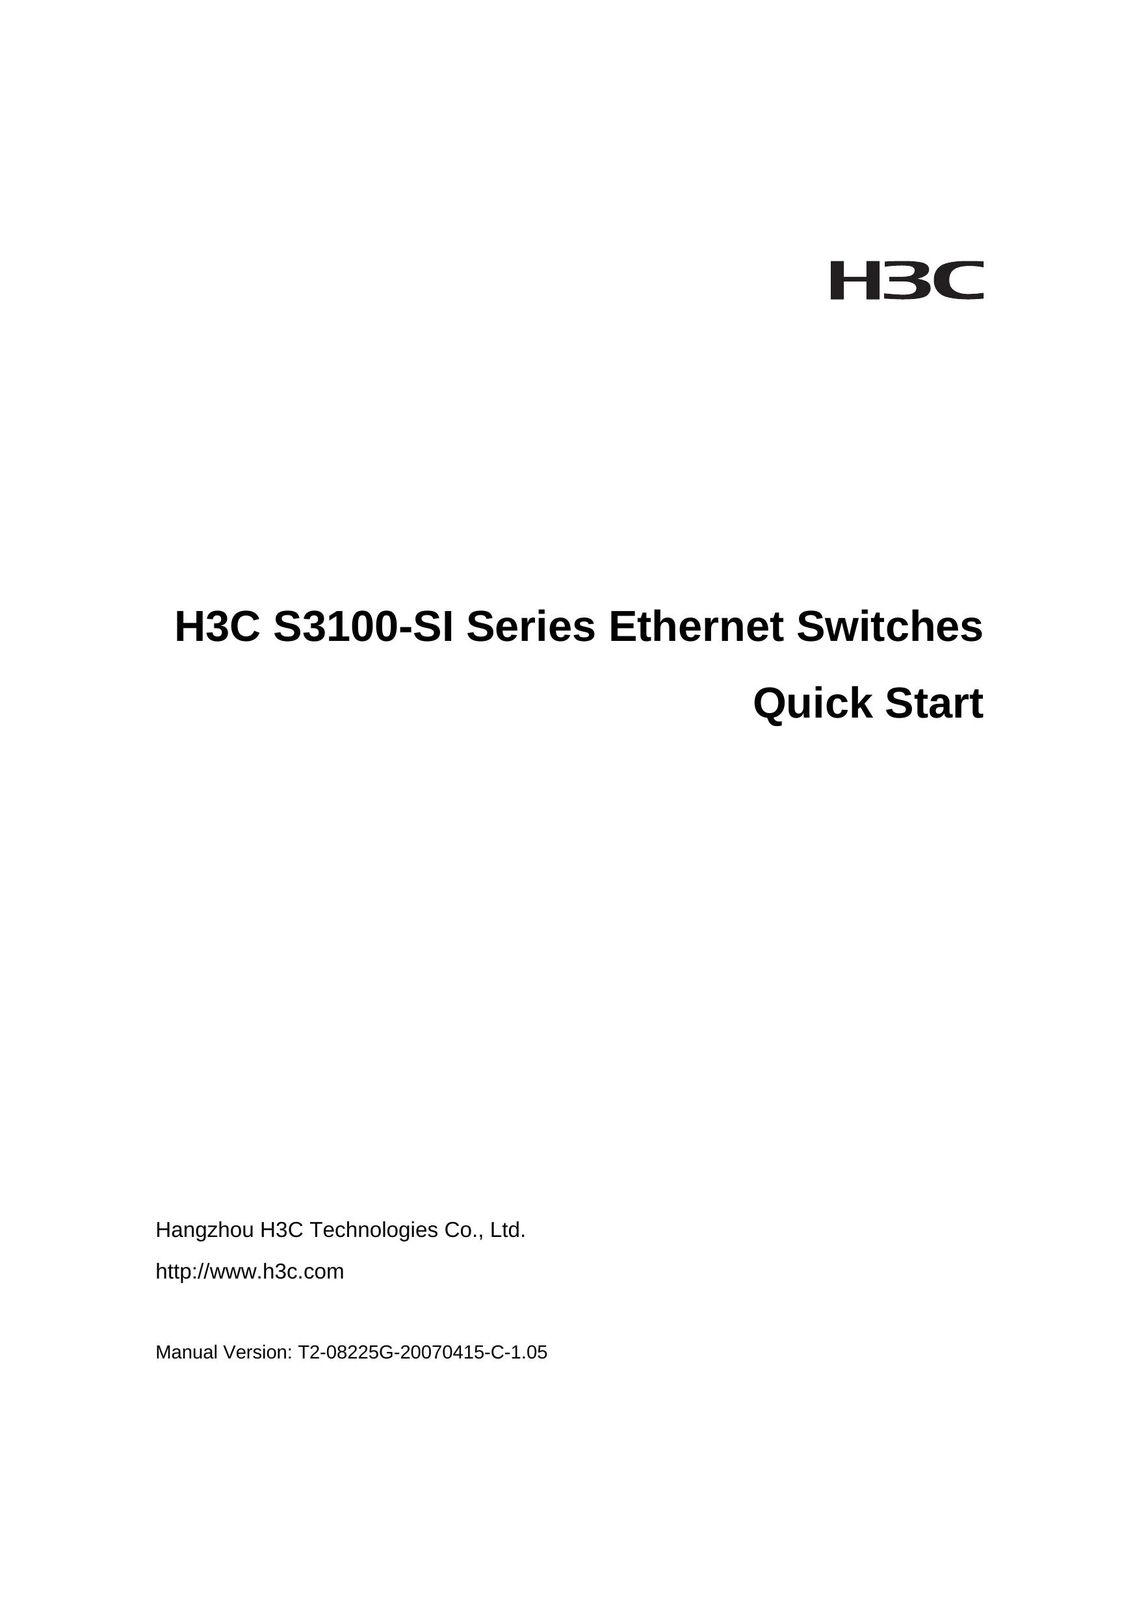 Hangzhou Hechang Trading S3100-SI Switch User Manual